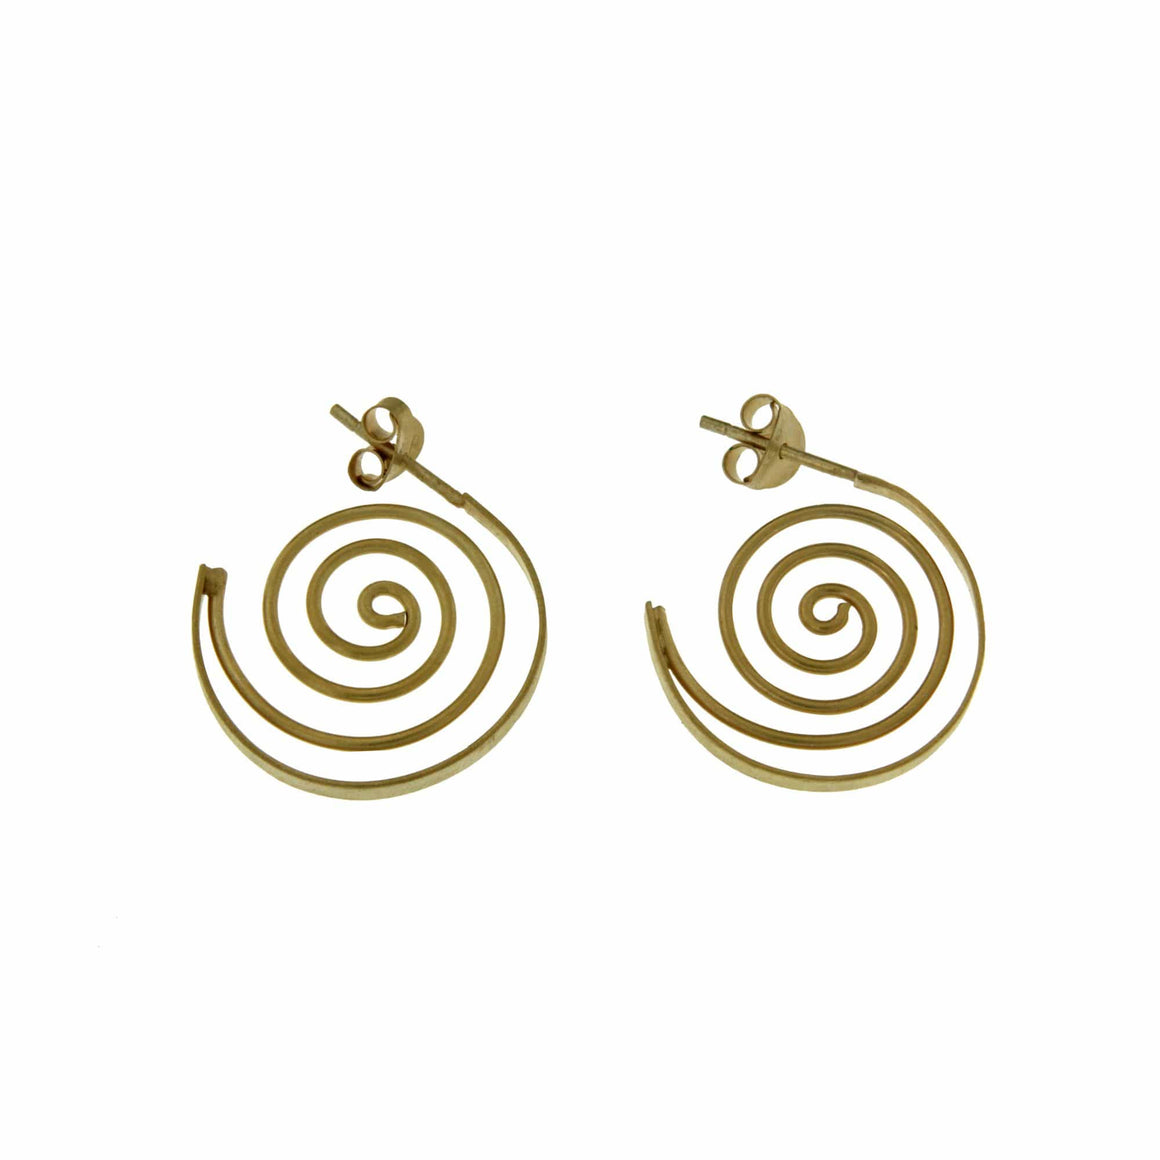 Manjusha Jewels earrings Devi Spiral Earrings in Gold